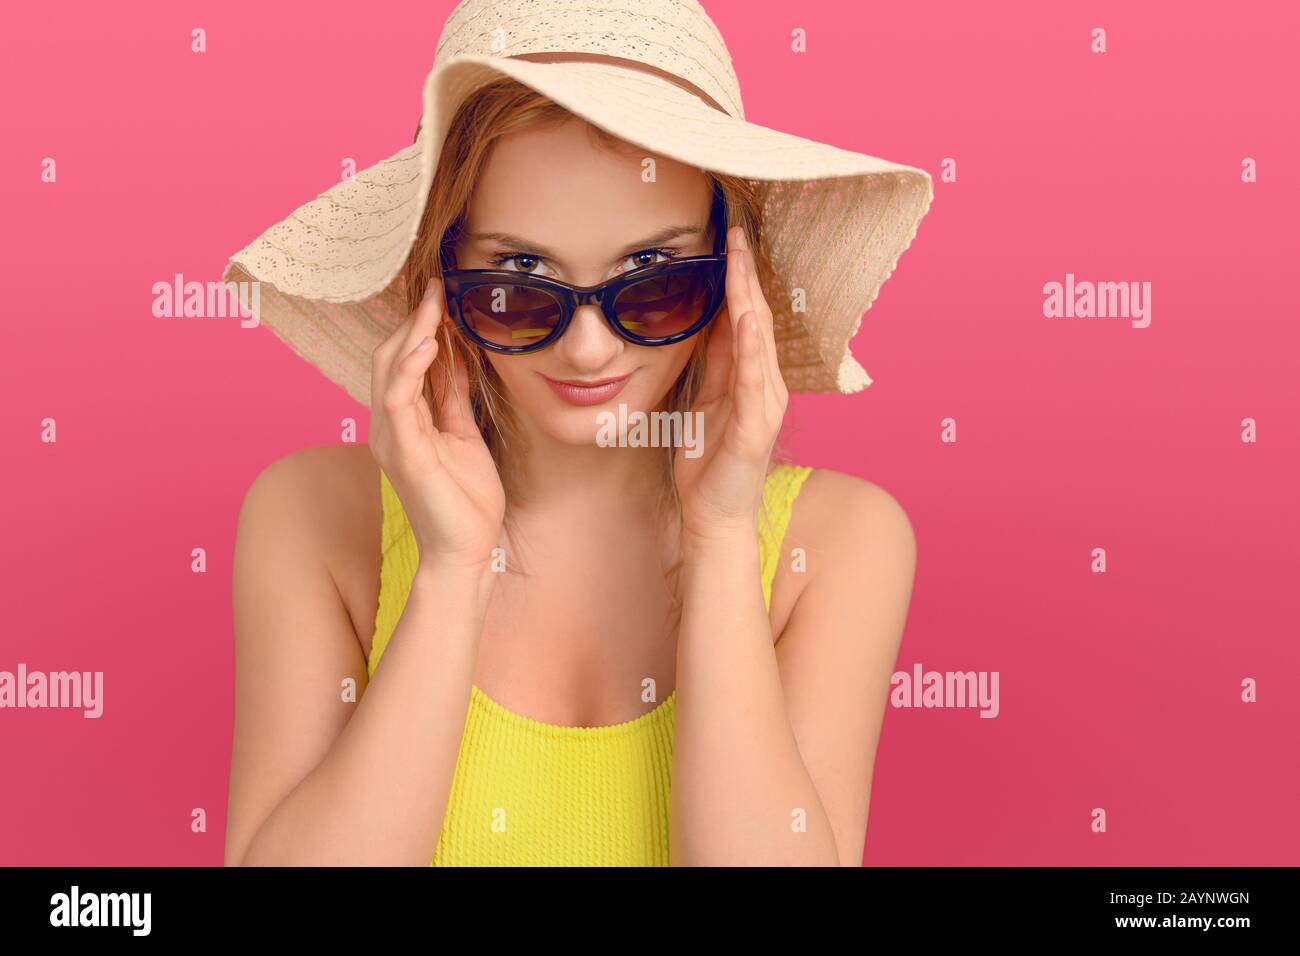 Attraktive, schicke junge Frau im Sommer-Outfit mit einem großen Floppy-Sonnenhut, der mit einem freundlichen Lächeln über die Oberseite ihrer Sonnenbrille an der Kamera schält Stockfoto